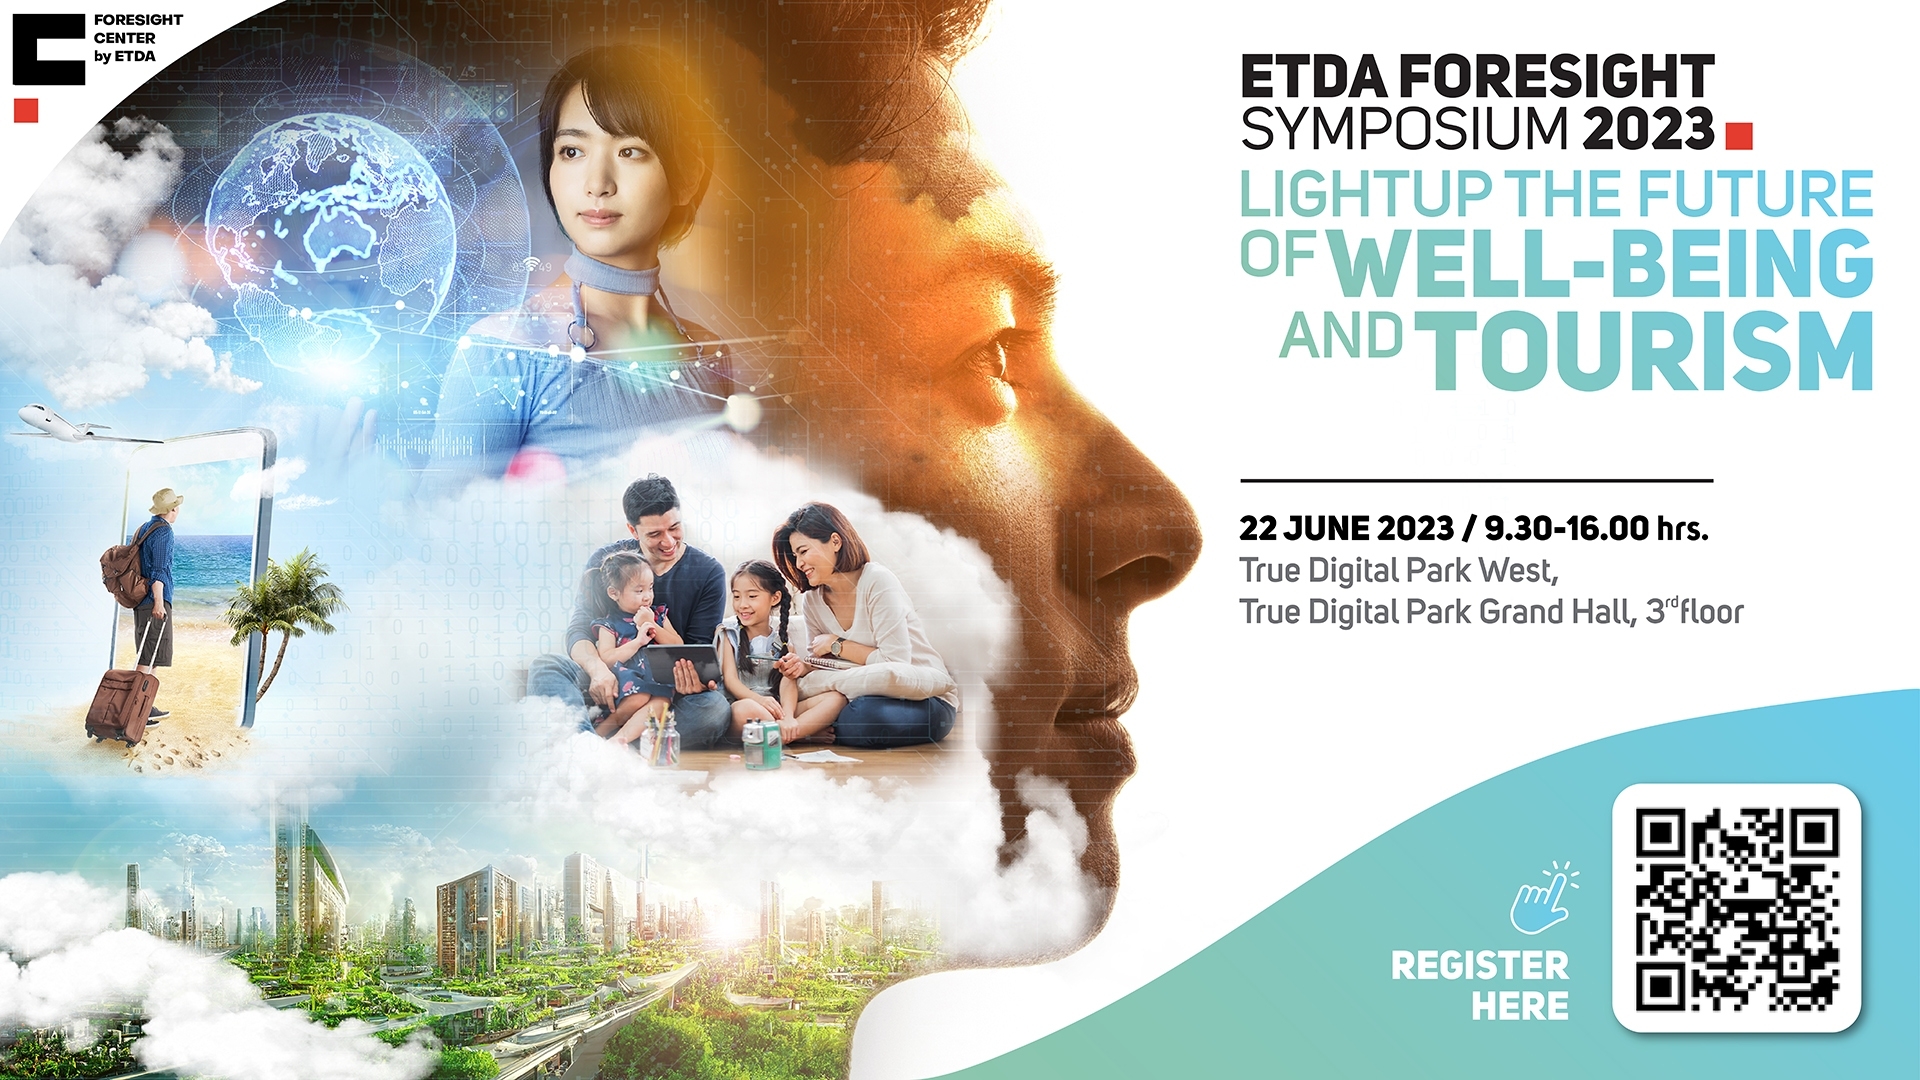 ก้าวสำคัญของศูนย์ ETDA Foresight สู่งานใหญ่แห่งปี ฉายภาพอนาคต “Well-Being and Tourism”